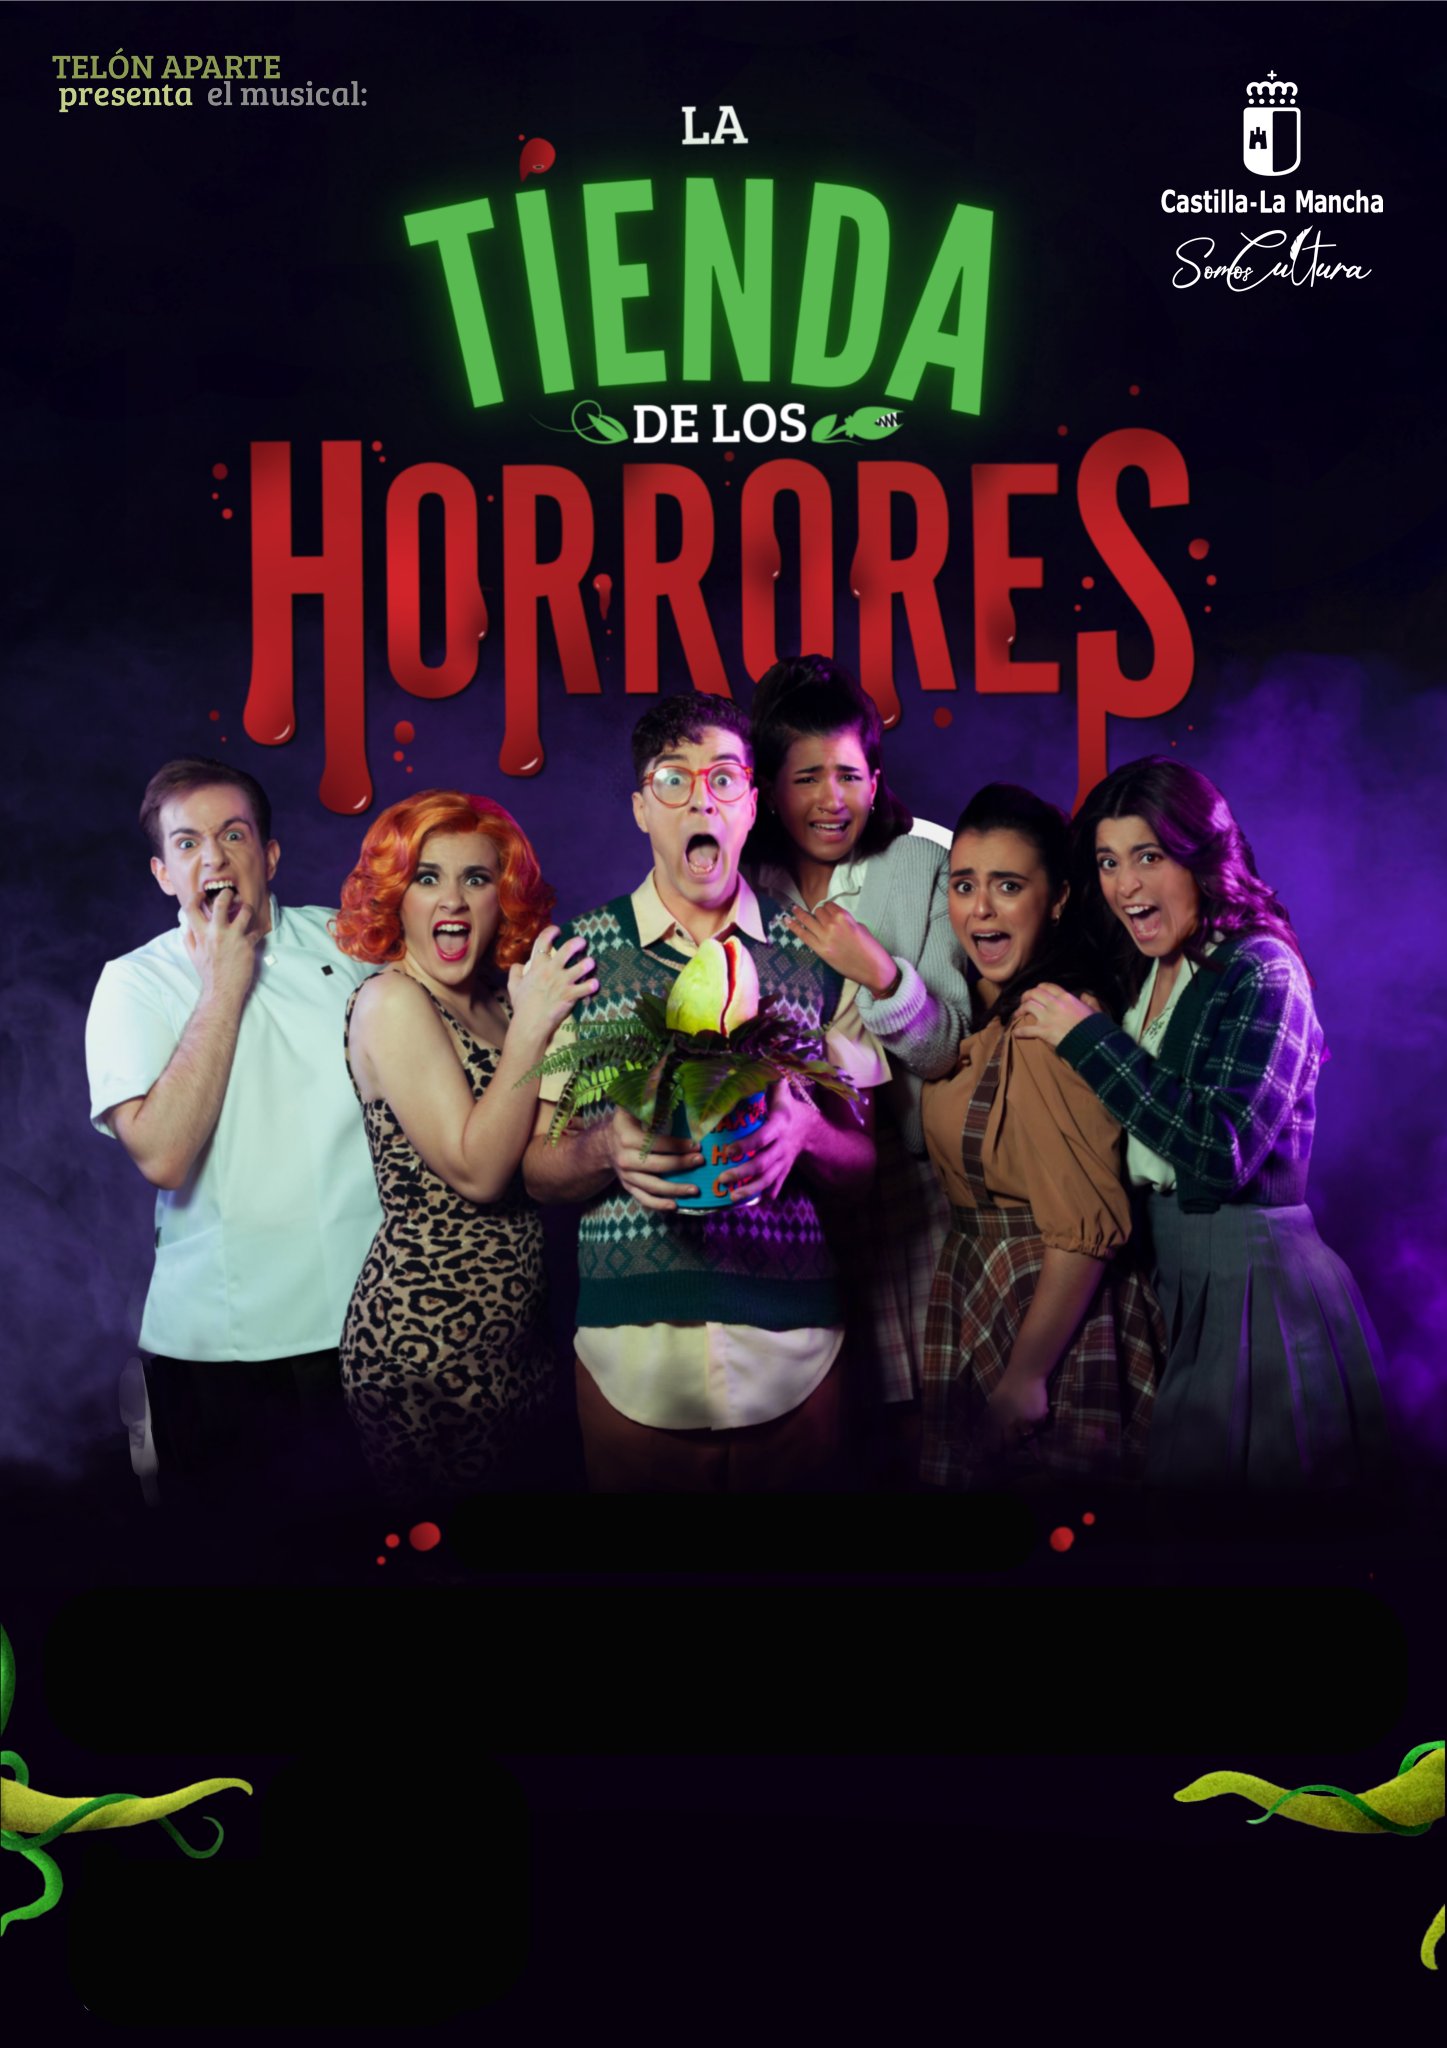 Teatro en Cabanillas del Campo: 'La tienda de los horrores' y 'El parto de Talía' en la Muestra Regional de Teatro Aficionado